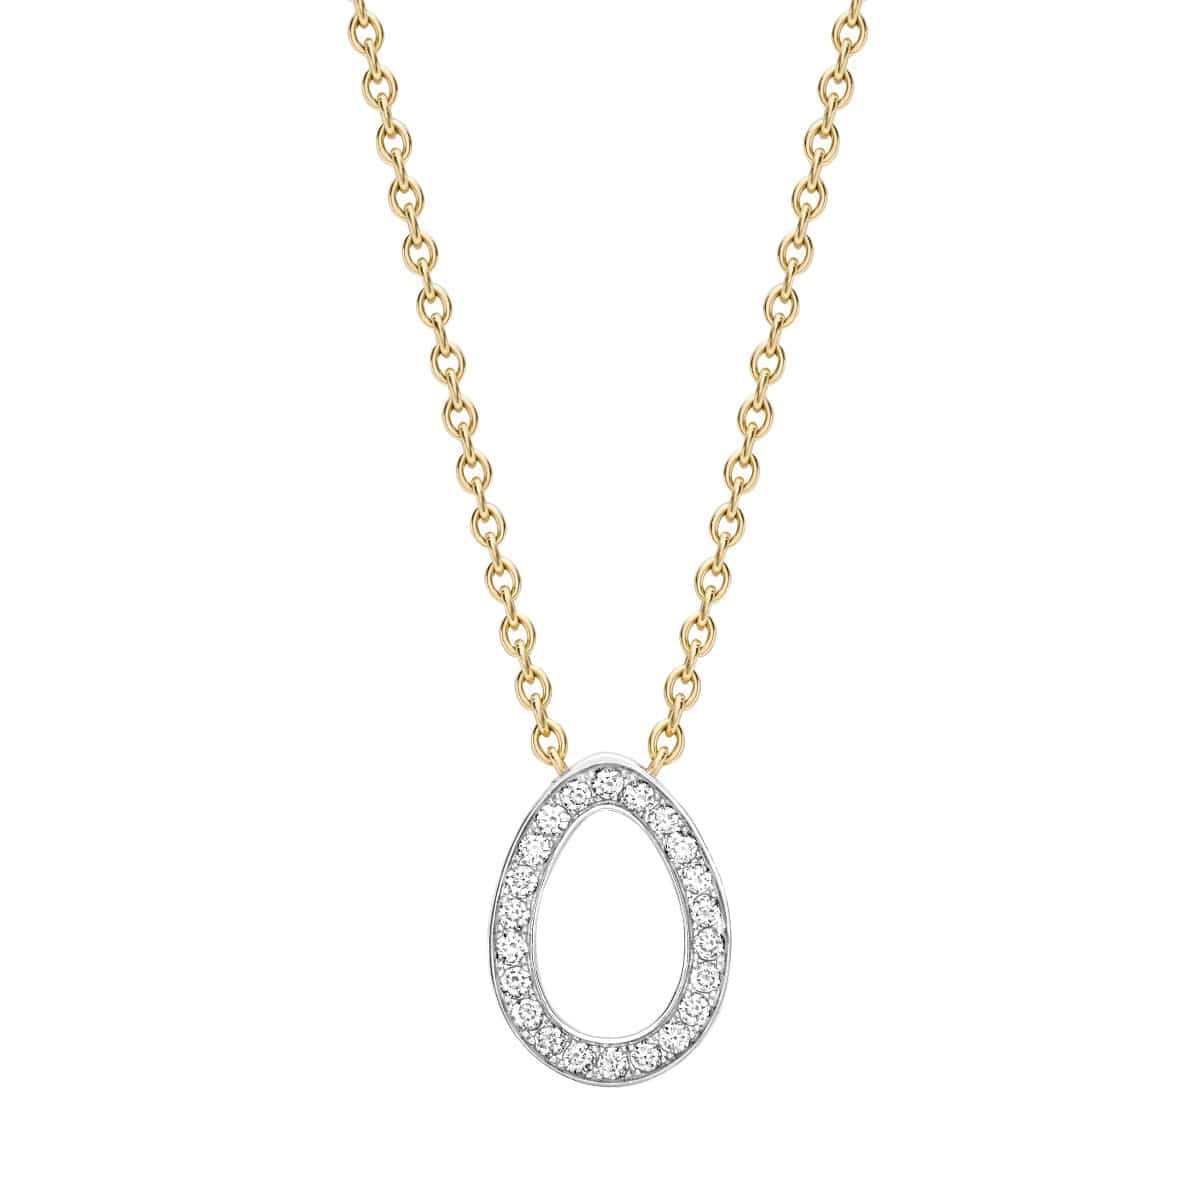 FABERGE Diamond Necklace